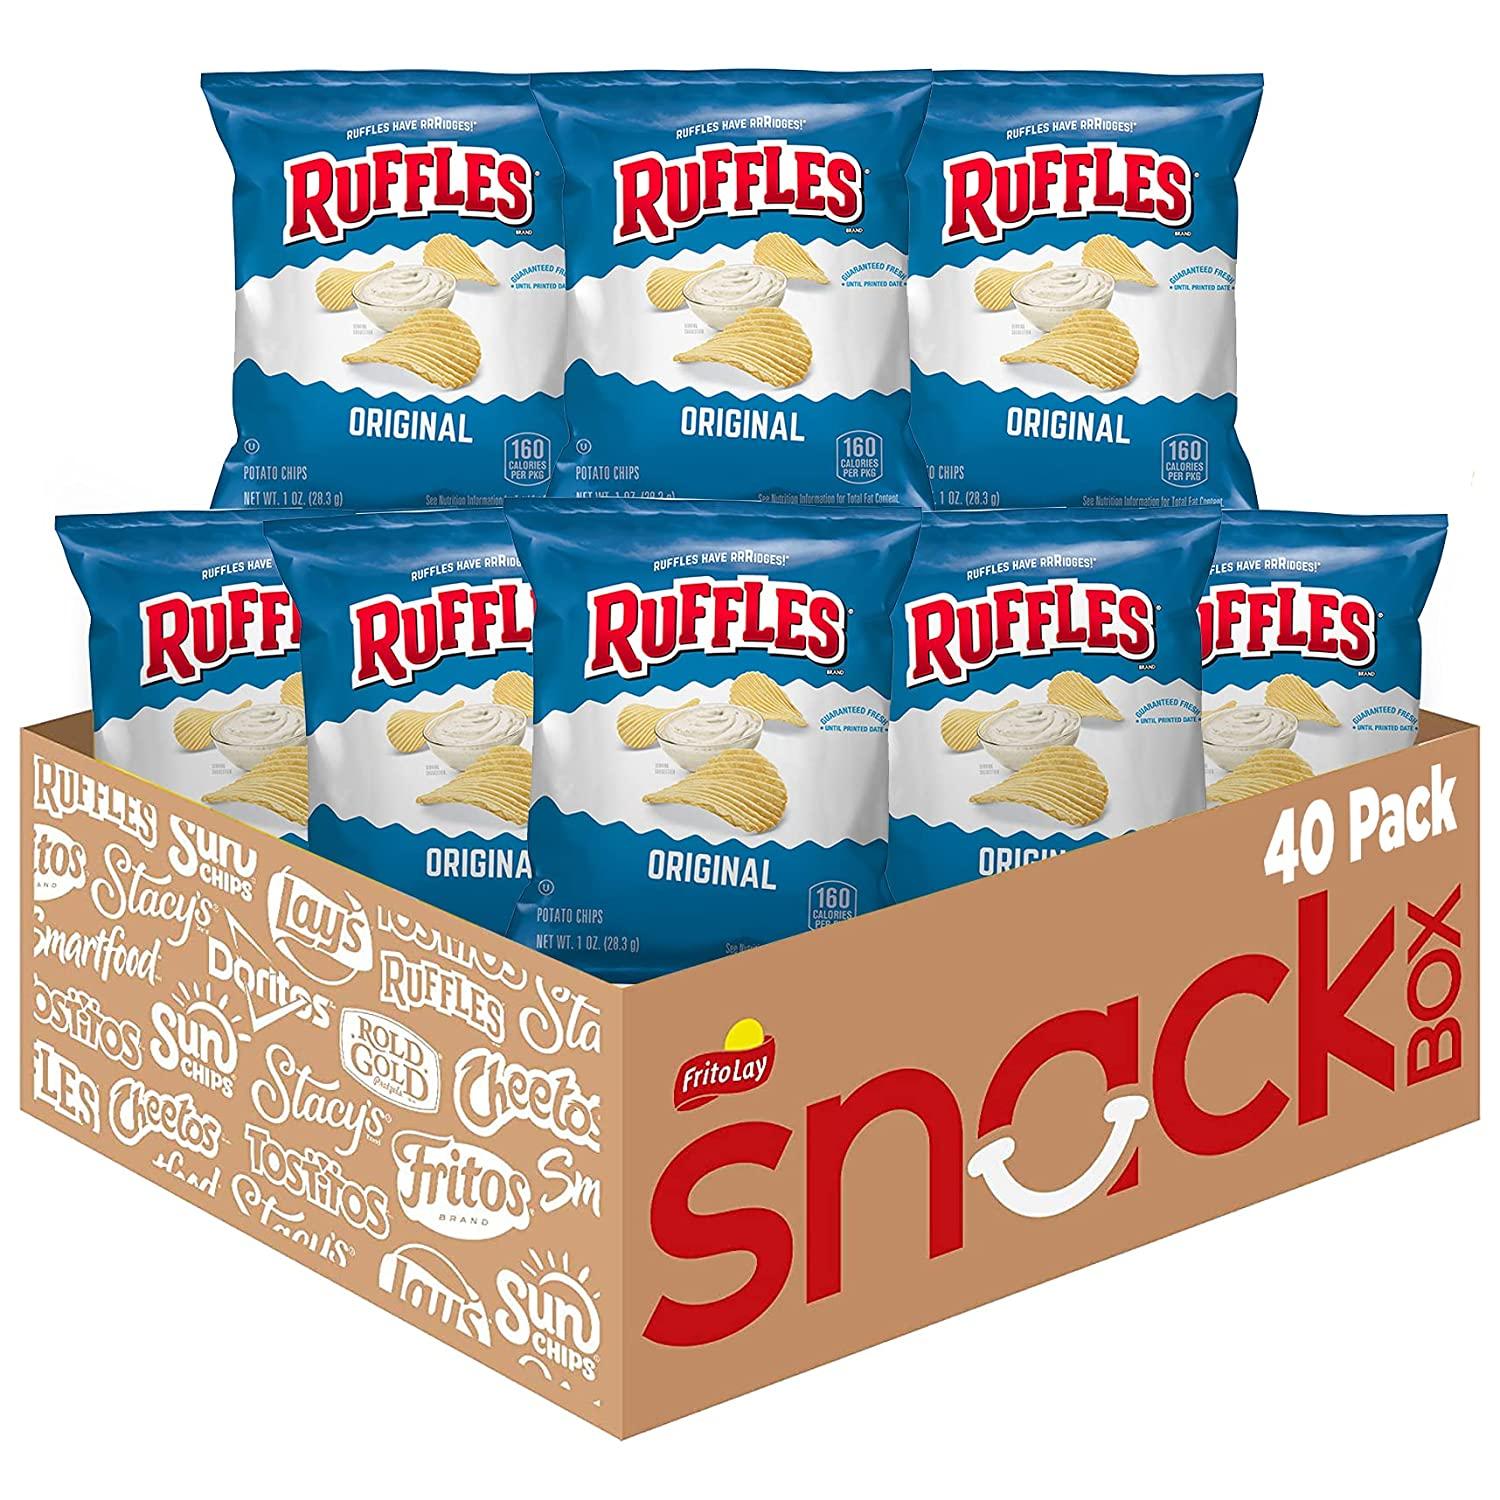 Ruffles Original Potato Chips 40 Pack for $14.42 Shipped